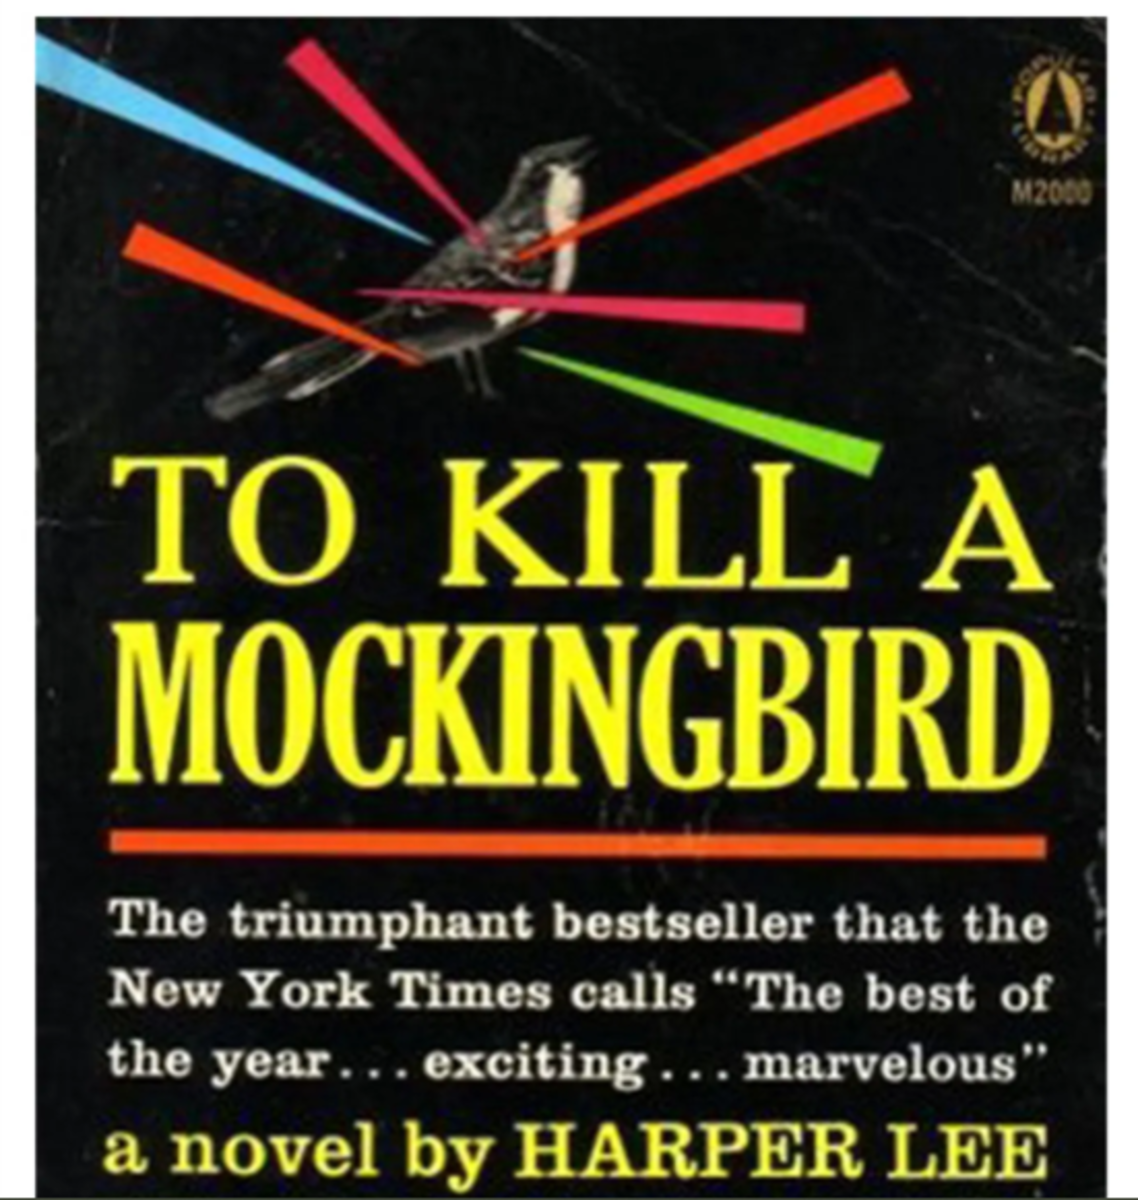 To Kill A Mockingbird: A Book Review